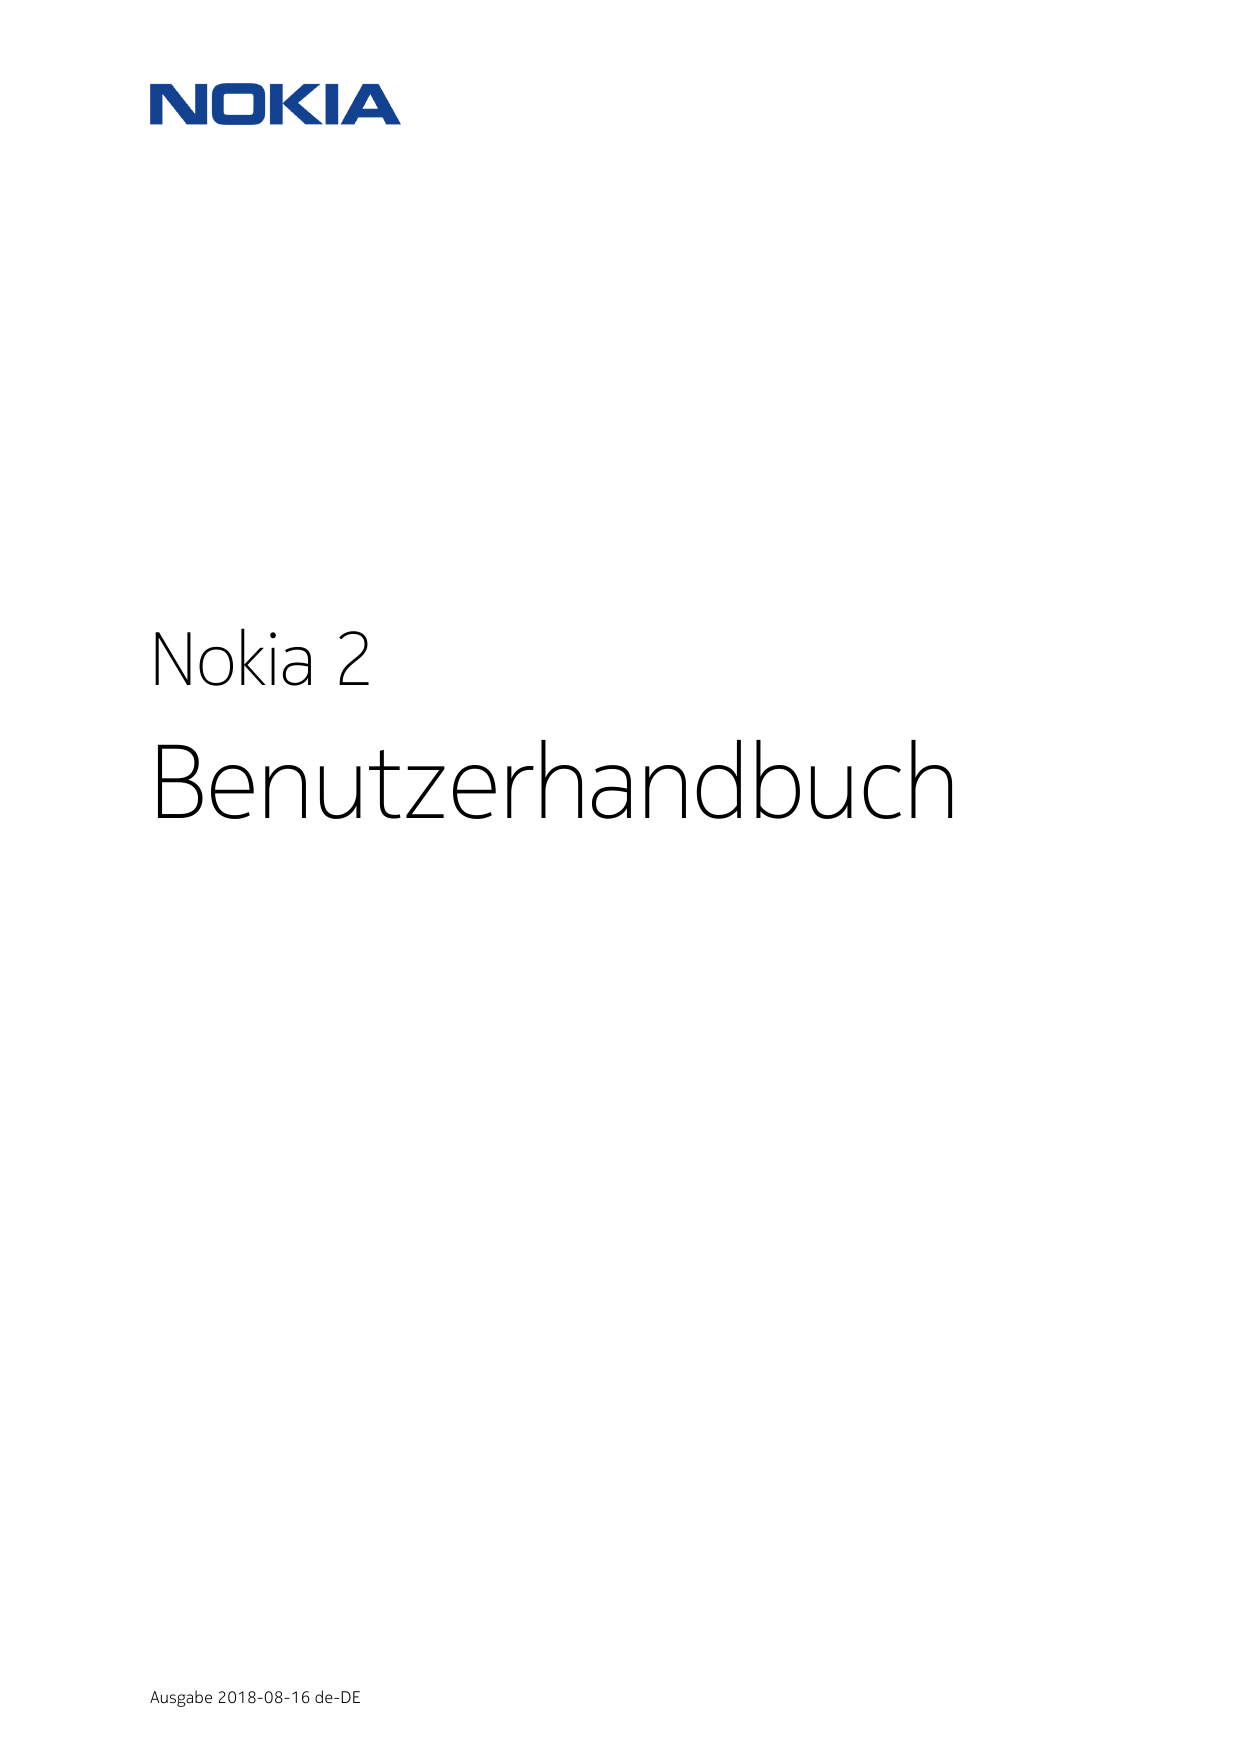 Nokia 2BenutzerhandbuchAusgabe 2018-08-16 de-DE